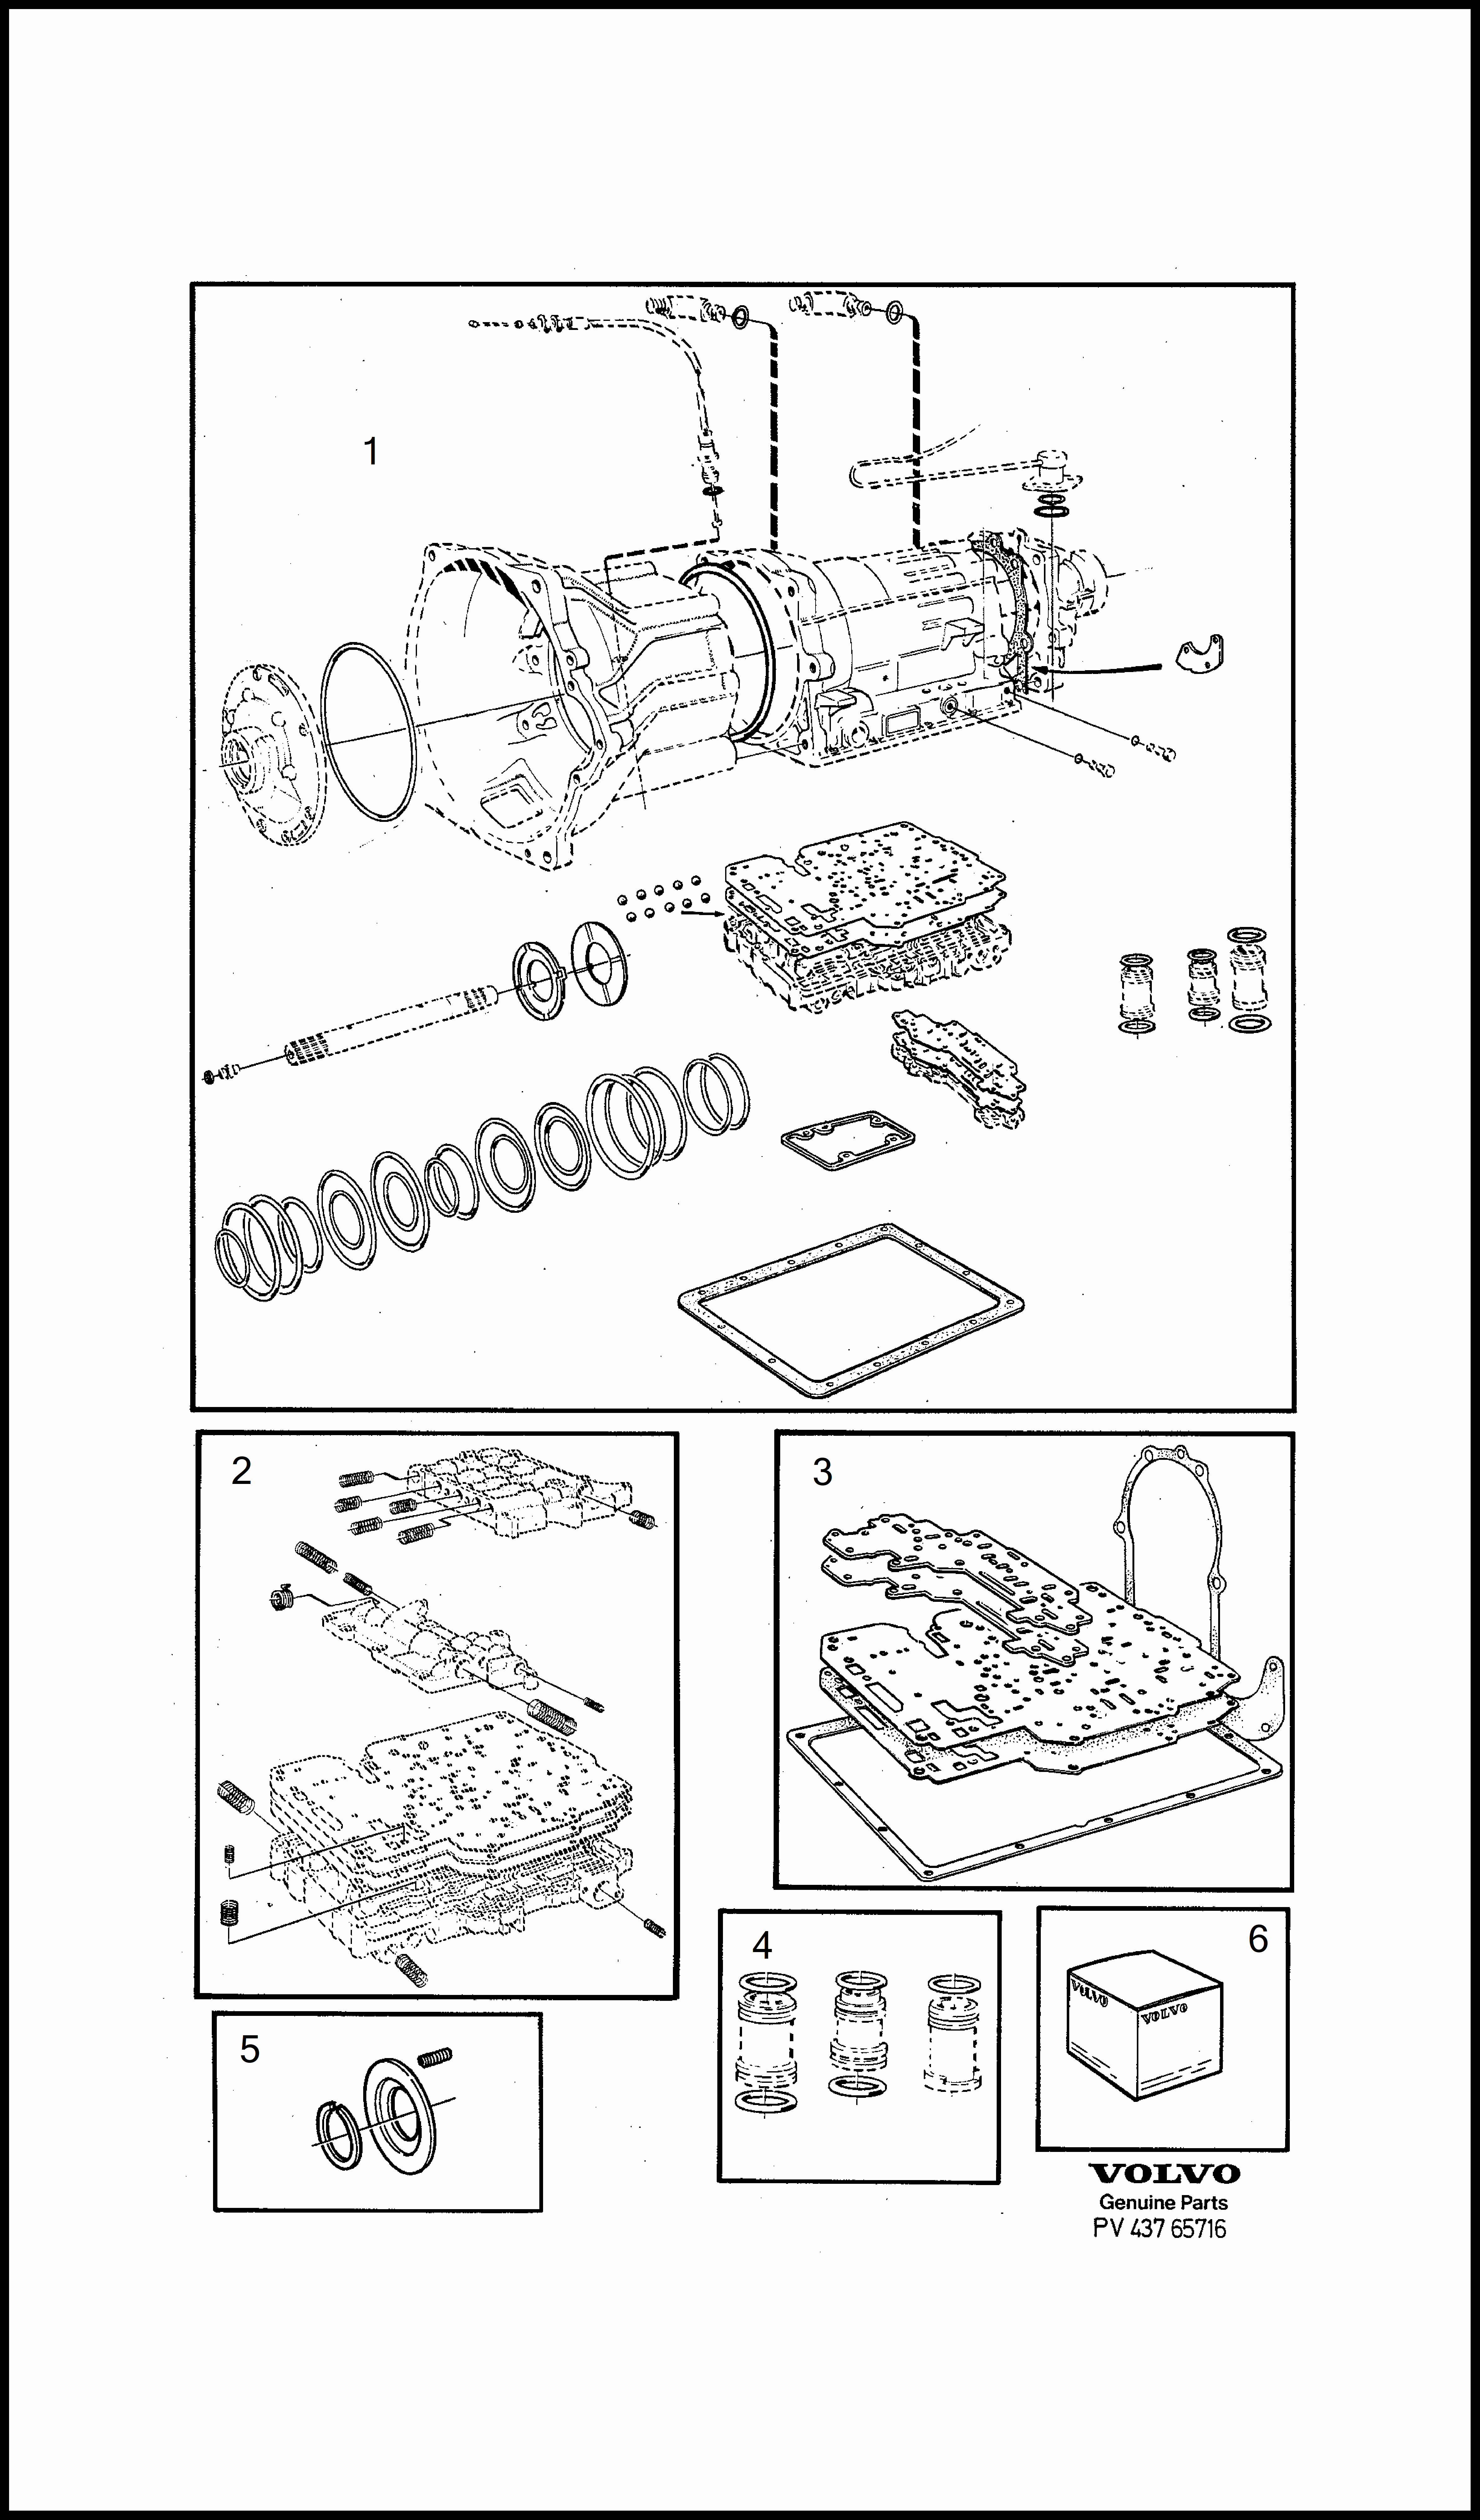 repair kits för Volvo 240 240